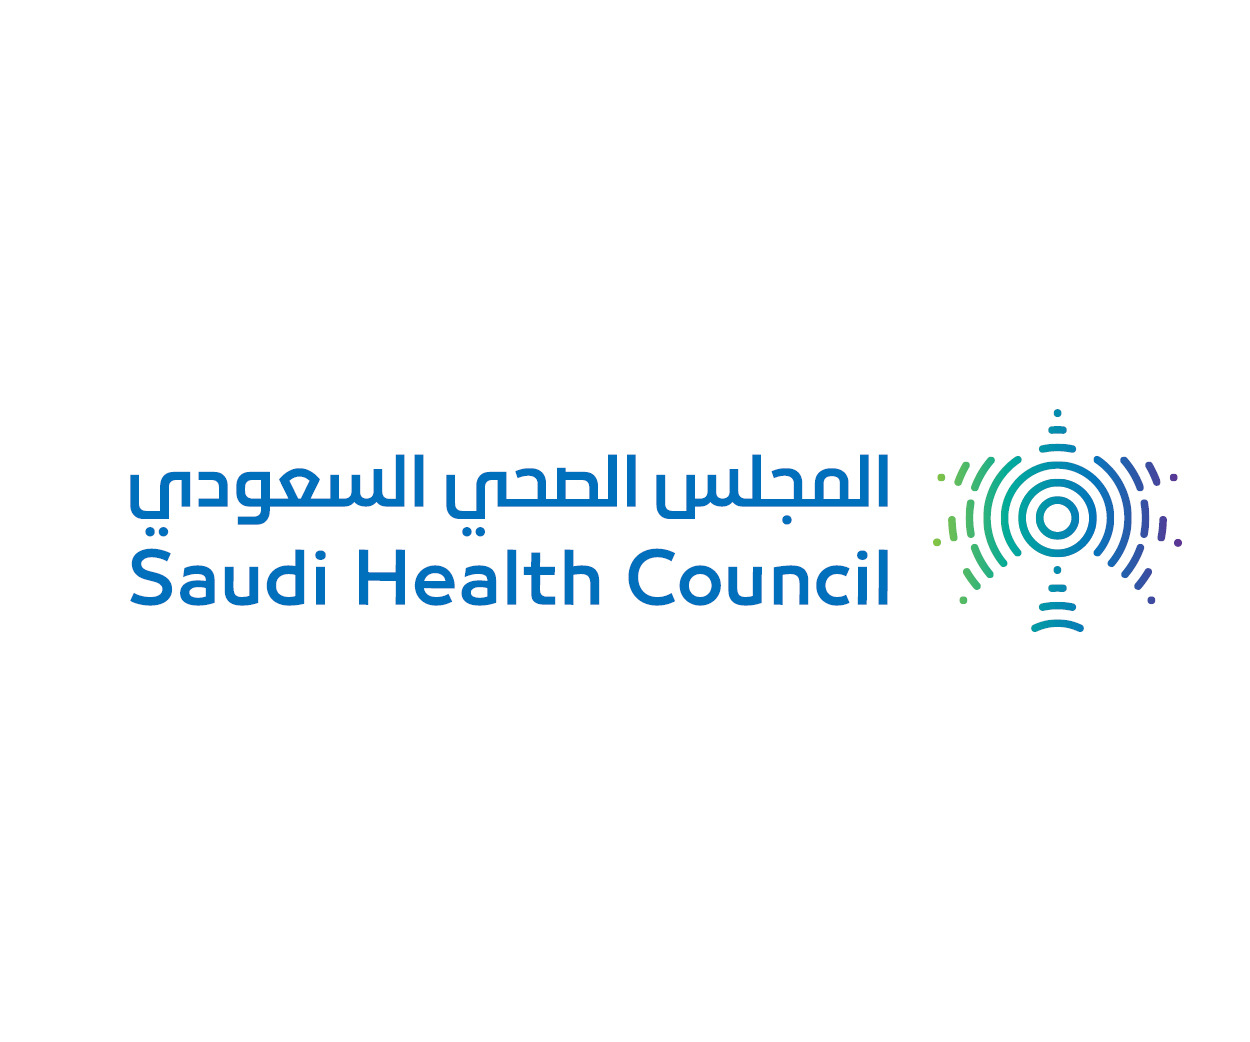 رابط وشروط التقديم لوظائف جديدة لدى المجلس الصحي السعودي